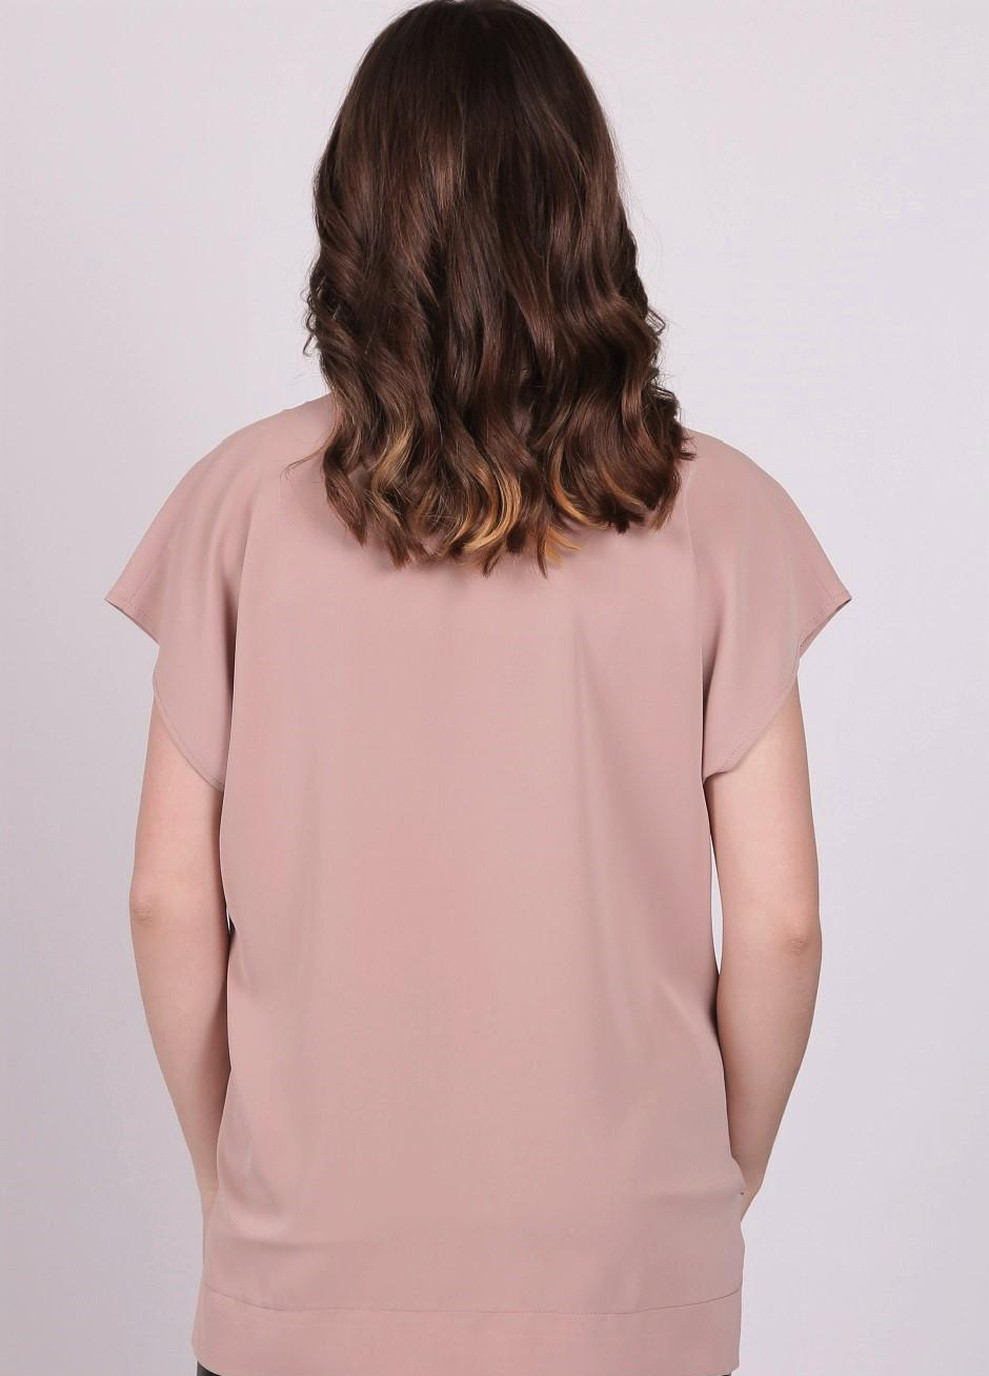 Светло-коричневая летняя блузка женская 0071 однотонный софт капучино Актуаль